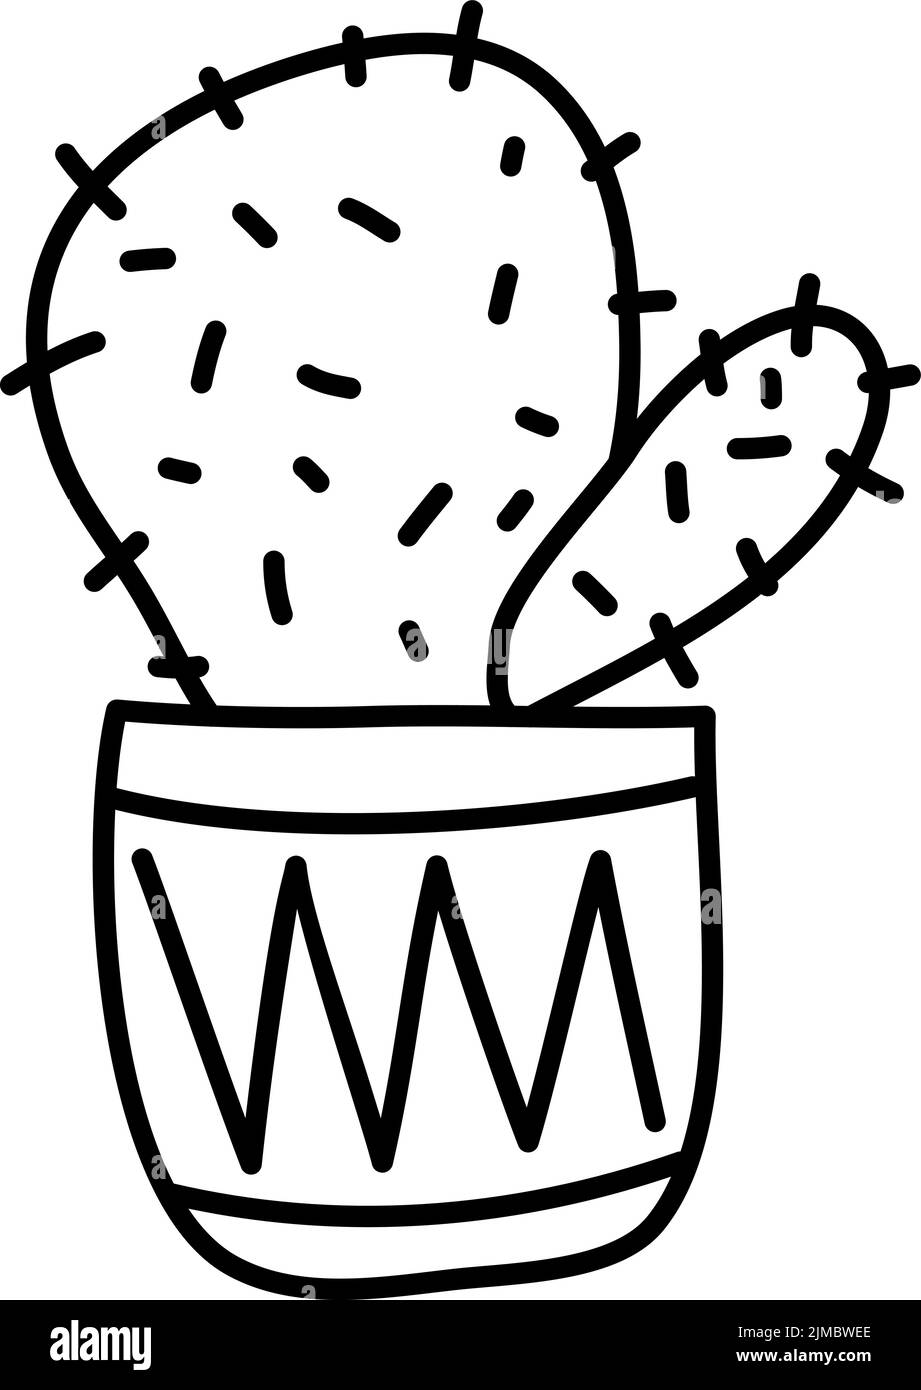 Vector Cactus Planta en macetas Equinocactus monolina planta doméstica dibujada a mano en blanco ilustración aislada escandinava Ilustración del Vector